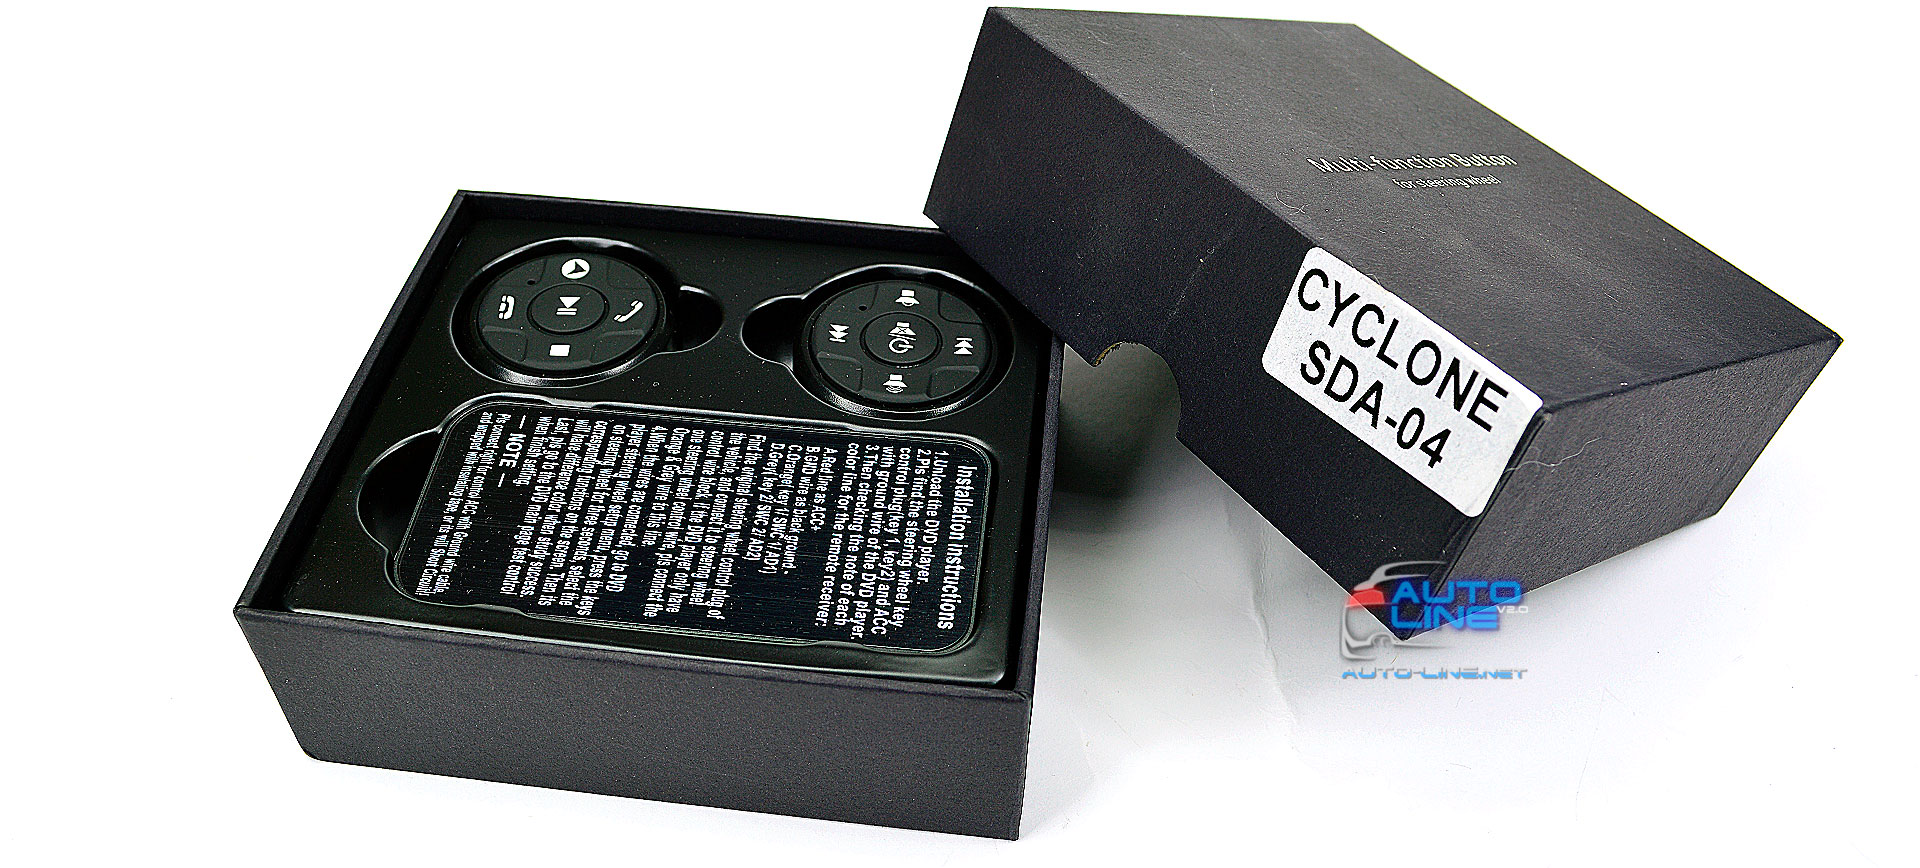 CYCLONE SDA-04 - автoмoбильный беспроводной пyльт нa pyль "таблетки"